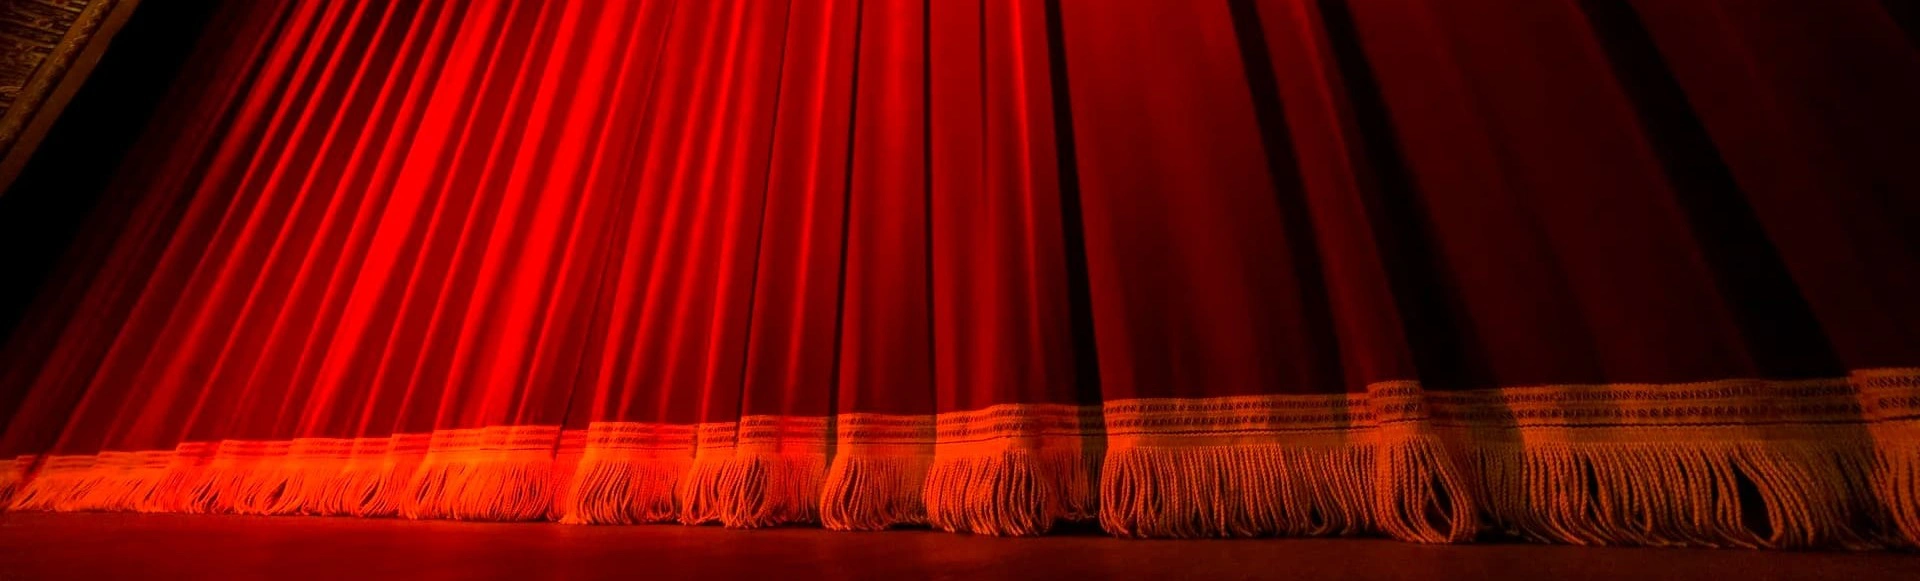 Уникальное событие в мире театрального искусства ждет вас – премьера оперы «Кармен» в Михайловском театре!